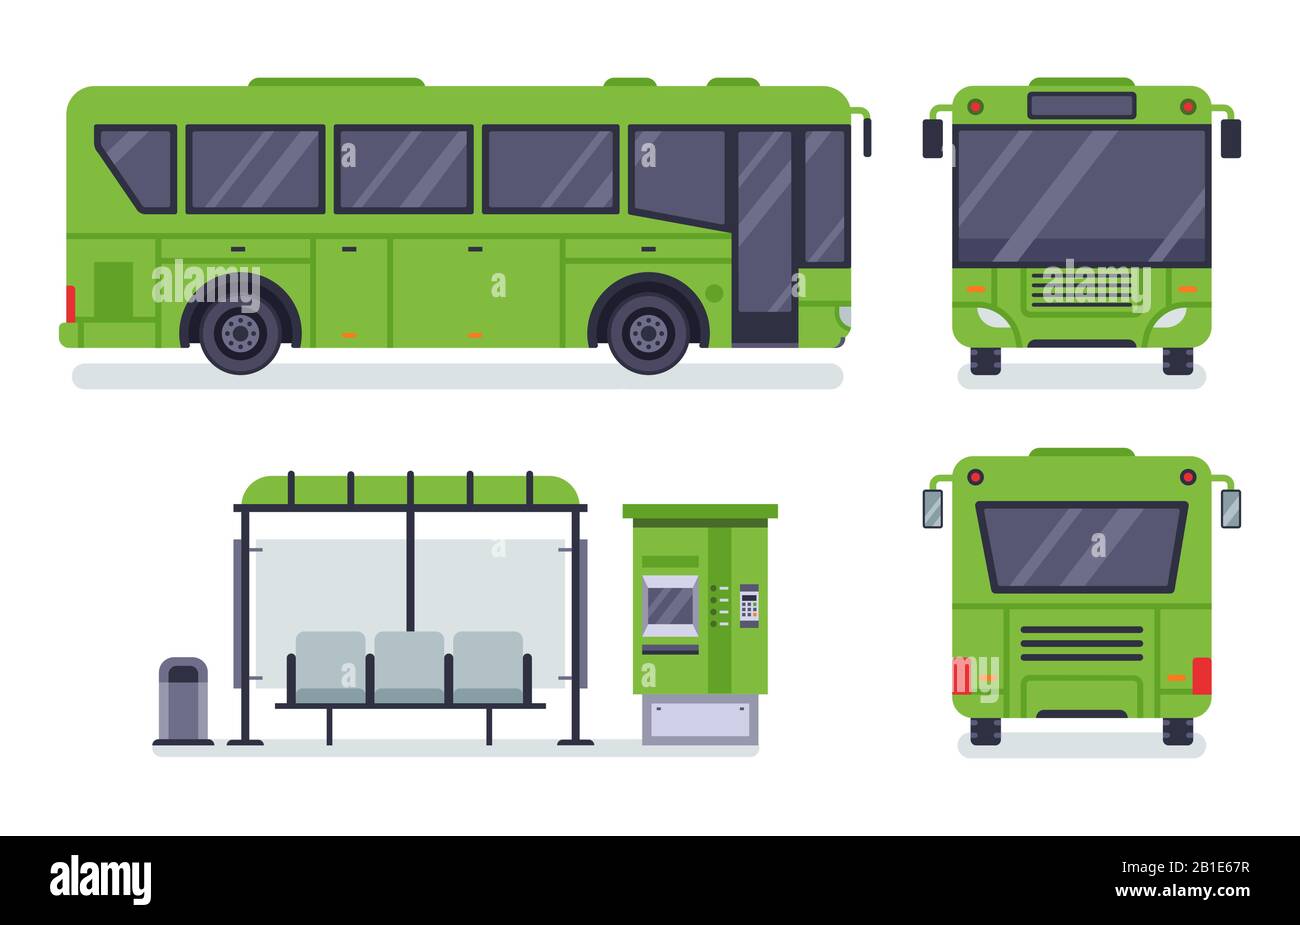 Flacher Stadtbus. Öffentliche Verkehrsmittel, Autobus-Fahrkartenschalter und Busse Vektor-Illustration Set Stock Vektor